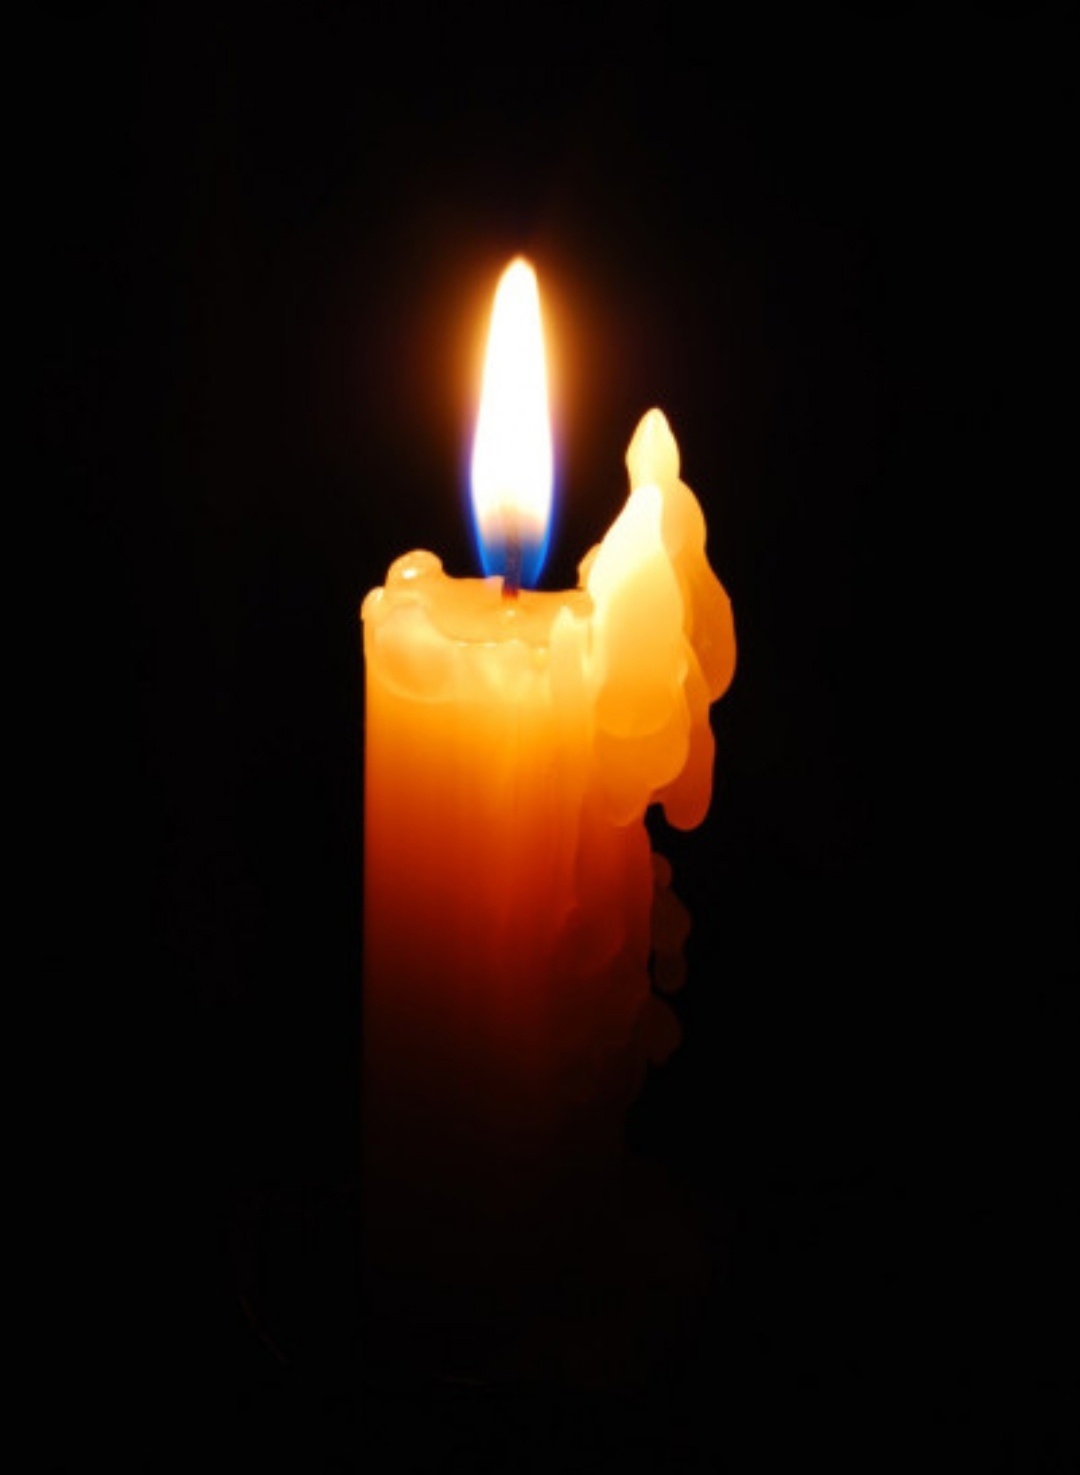 Ужасная трагедия произошла в Ижевске. Сотрудники музея выражают соболезнования близким погибших в 88-ой школе